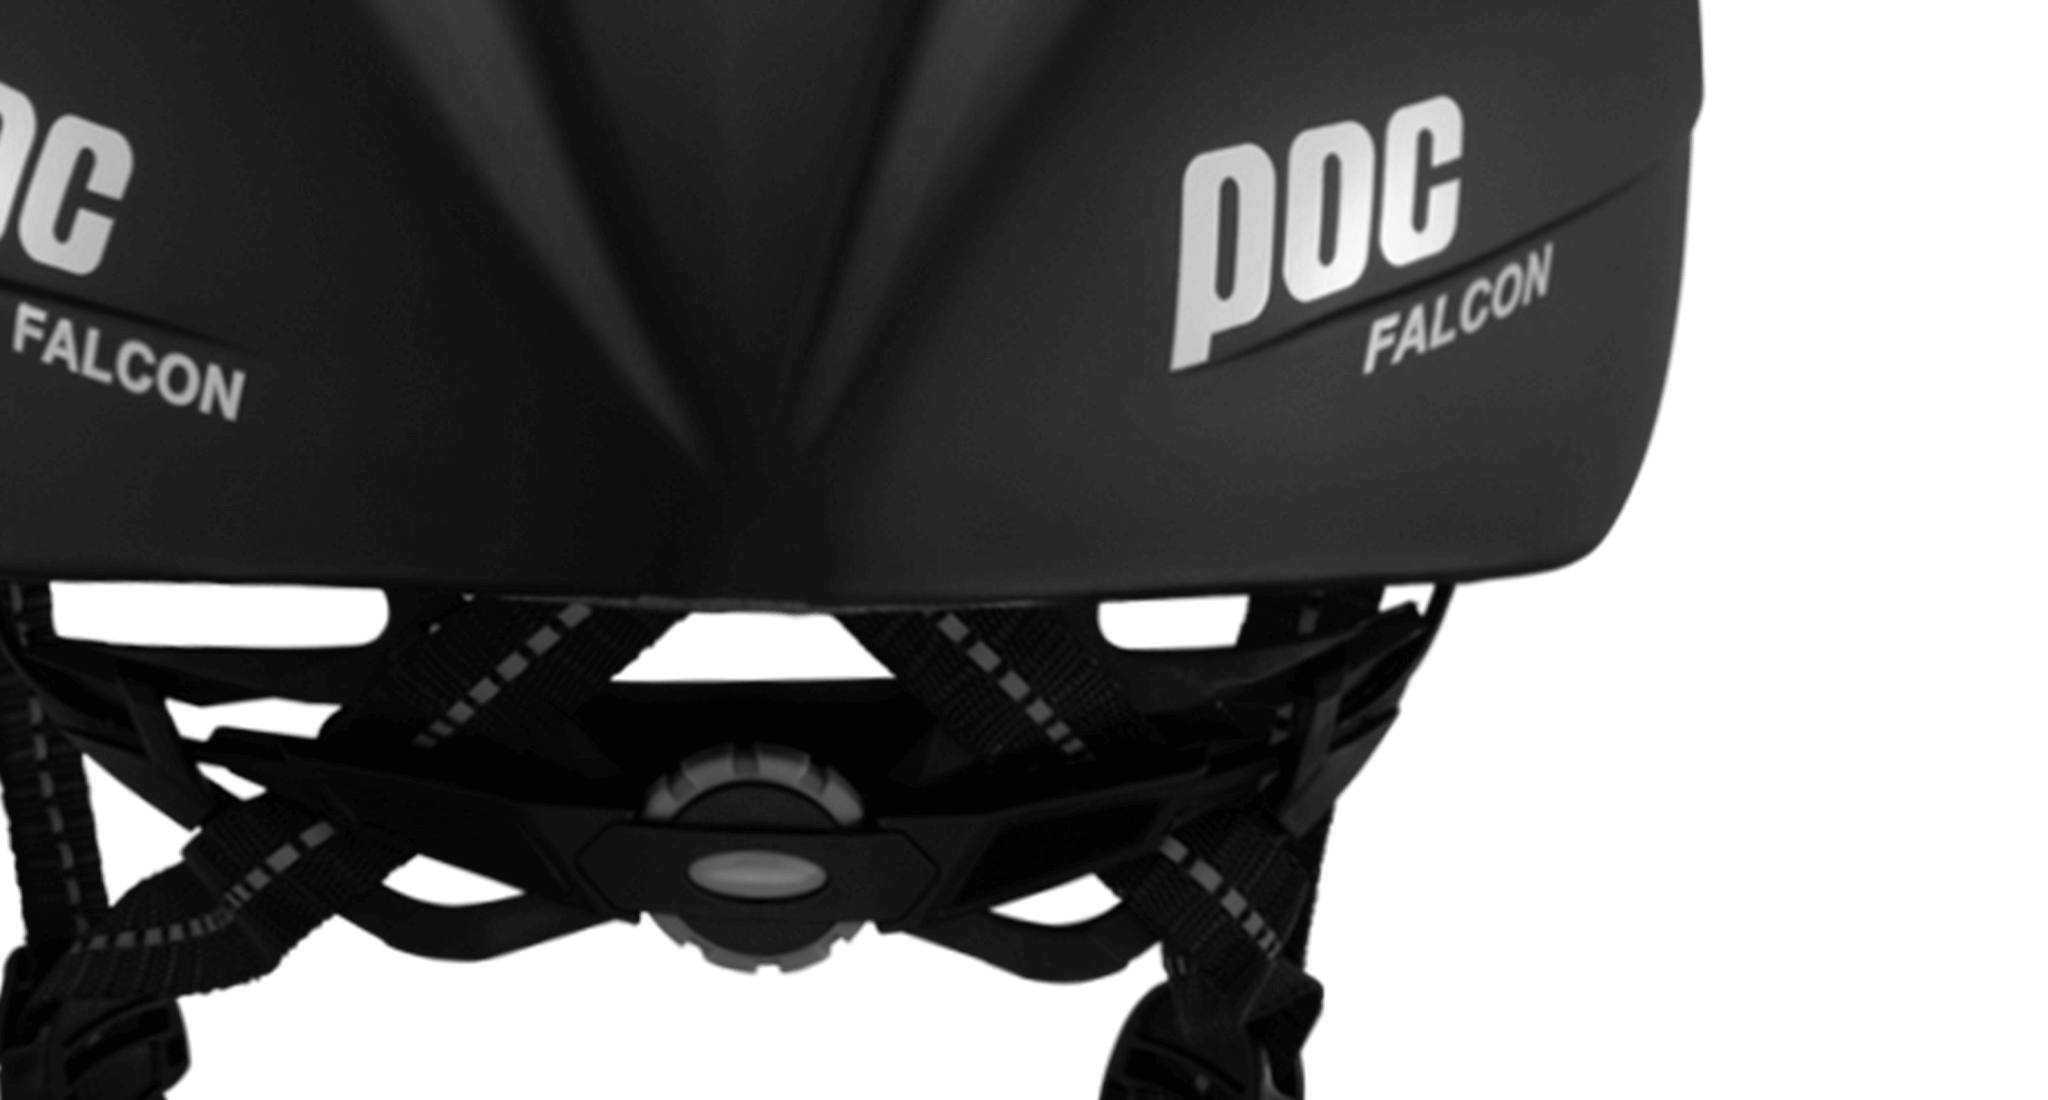 Núm vặn 360 độ nón POC Falcon